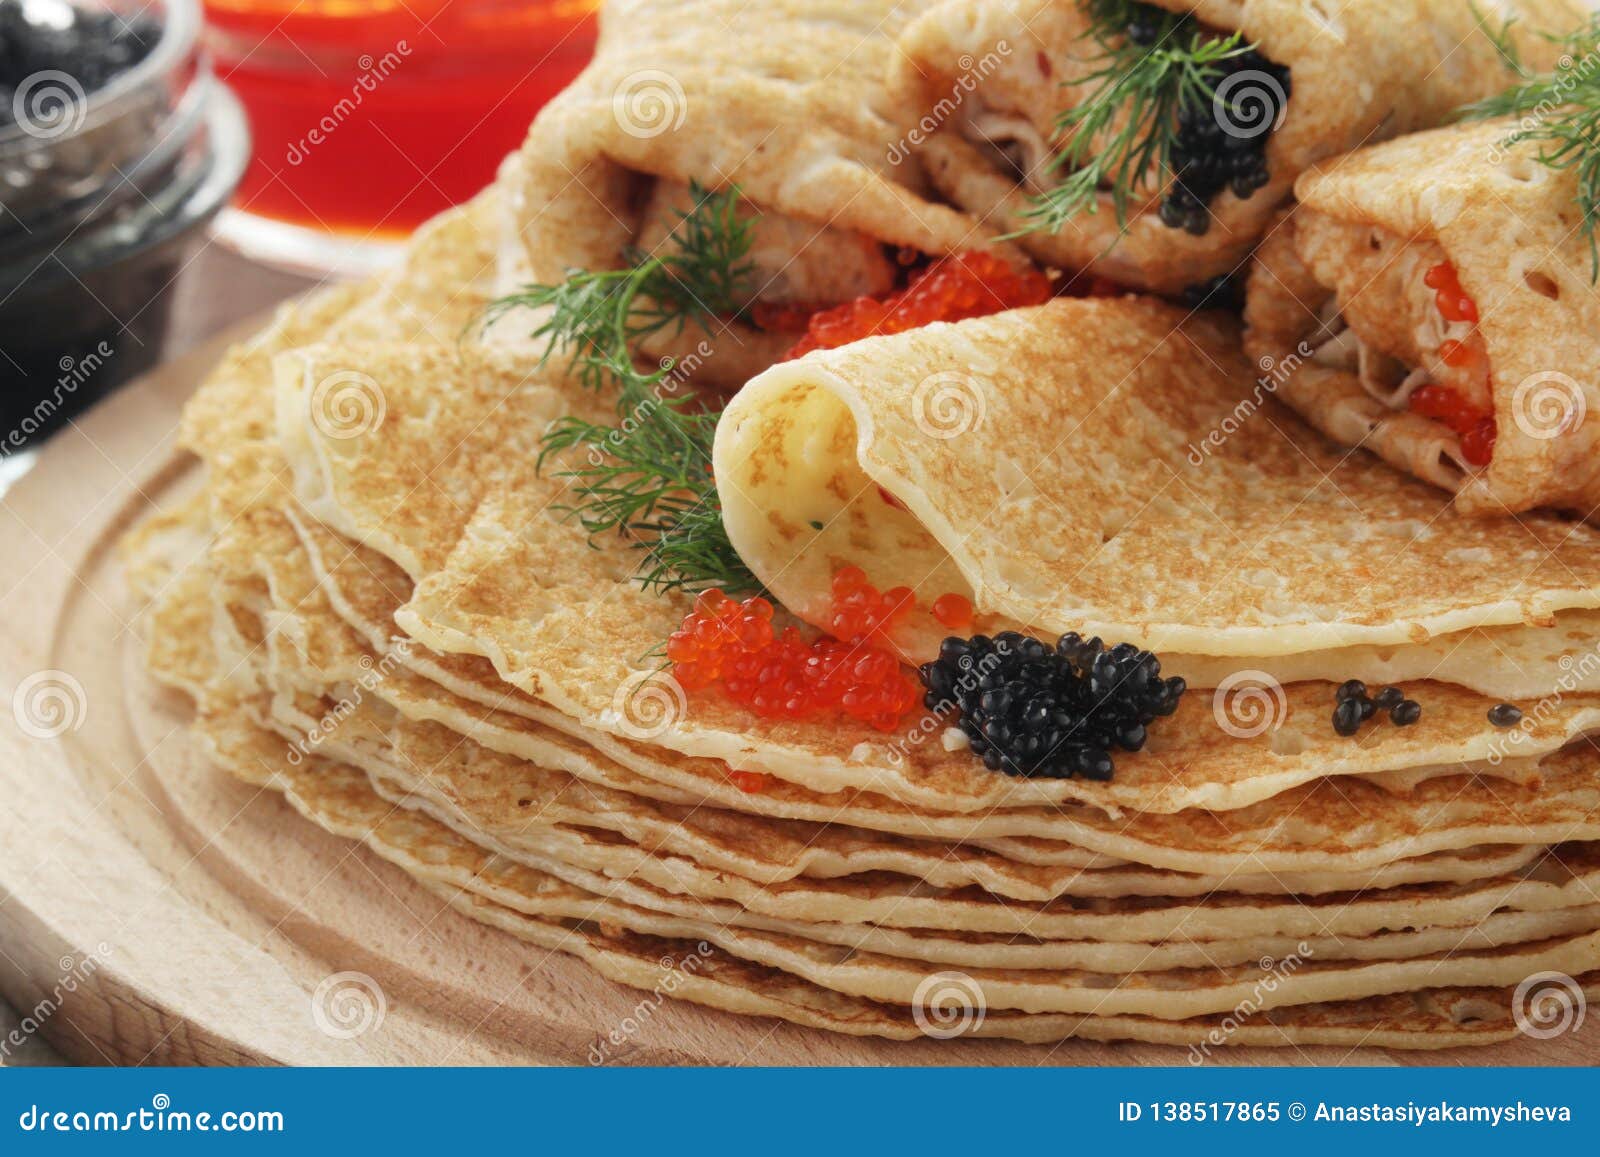 Russische Pfannkuchen Mit Rotem Und Schwarzem Kaviar Stockbild - Bild ...